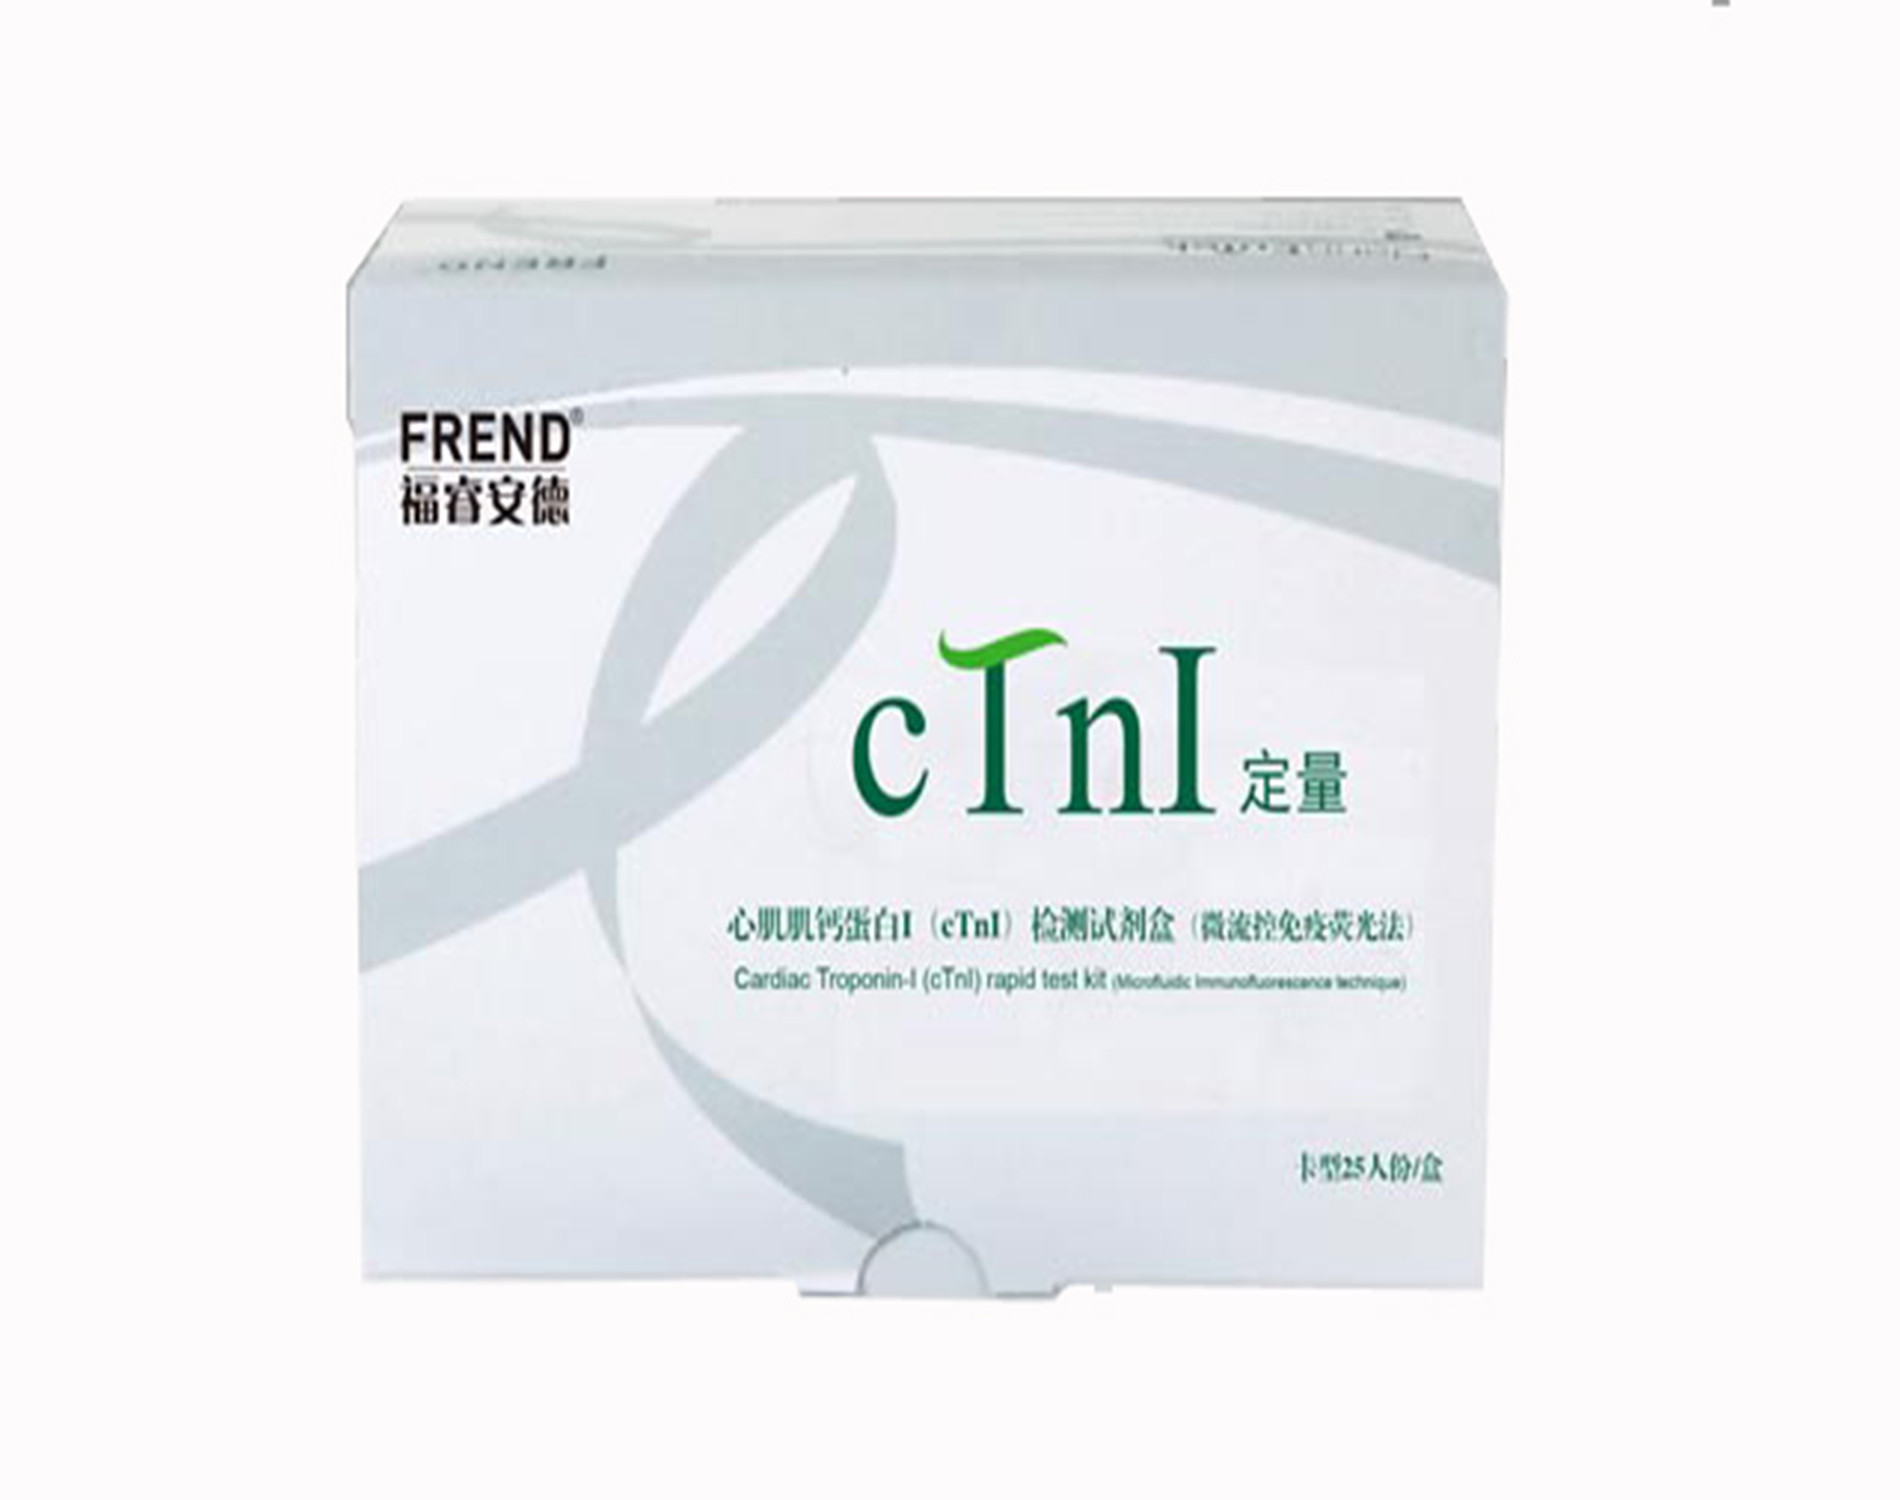 心肌肌钙蛋白I（cTnI）检测试剂盒(微流控免疫荧光法)